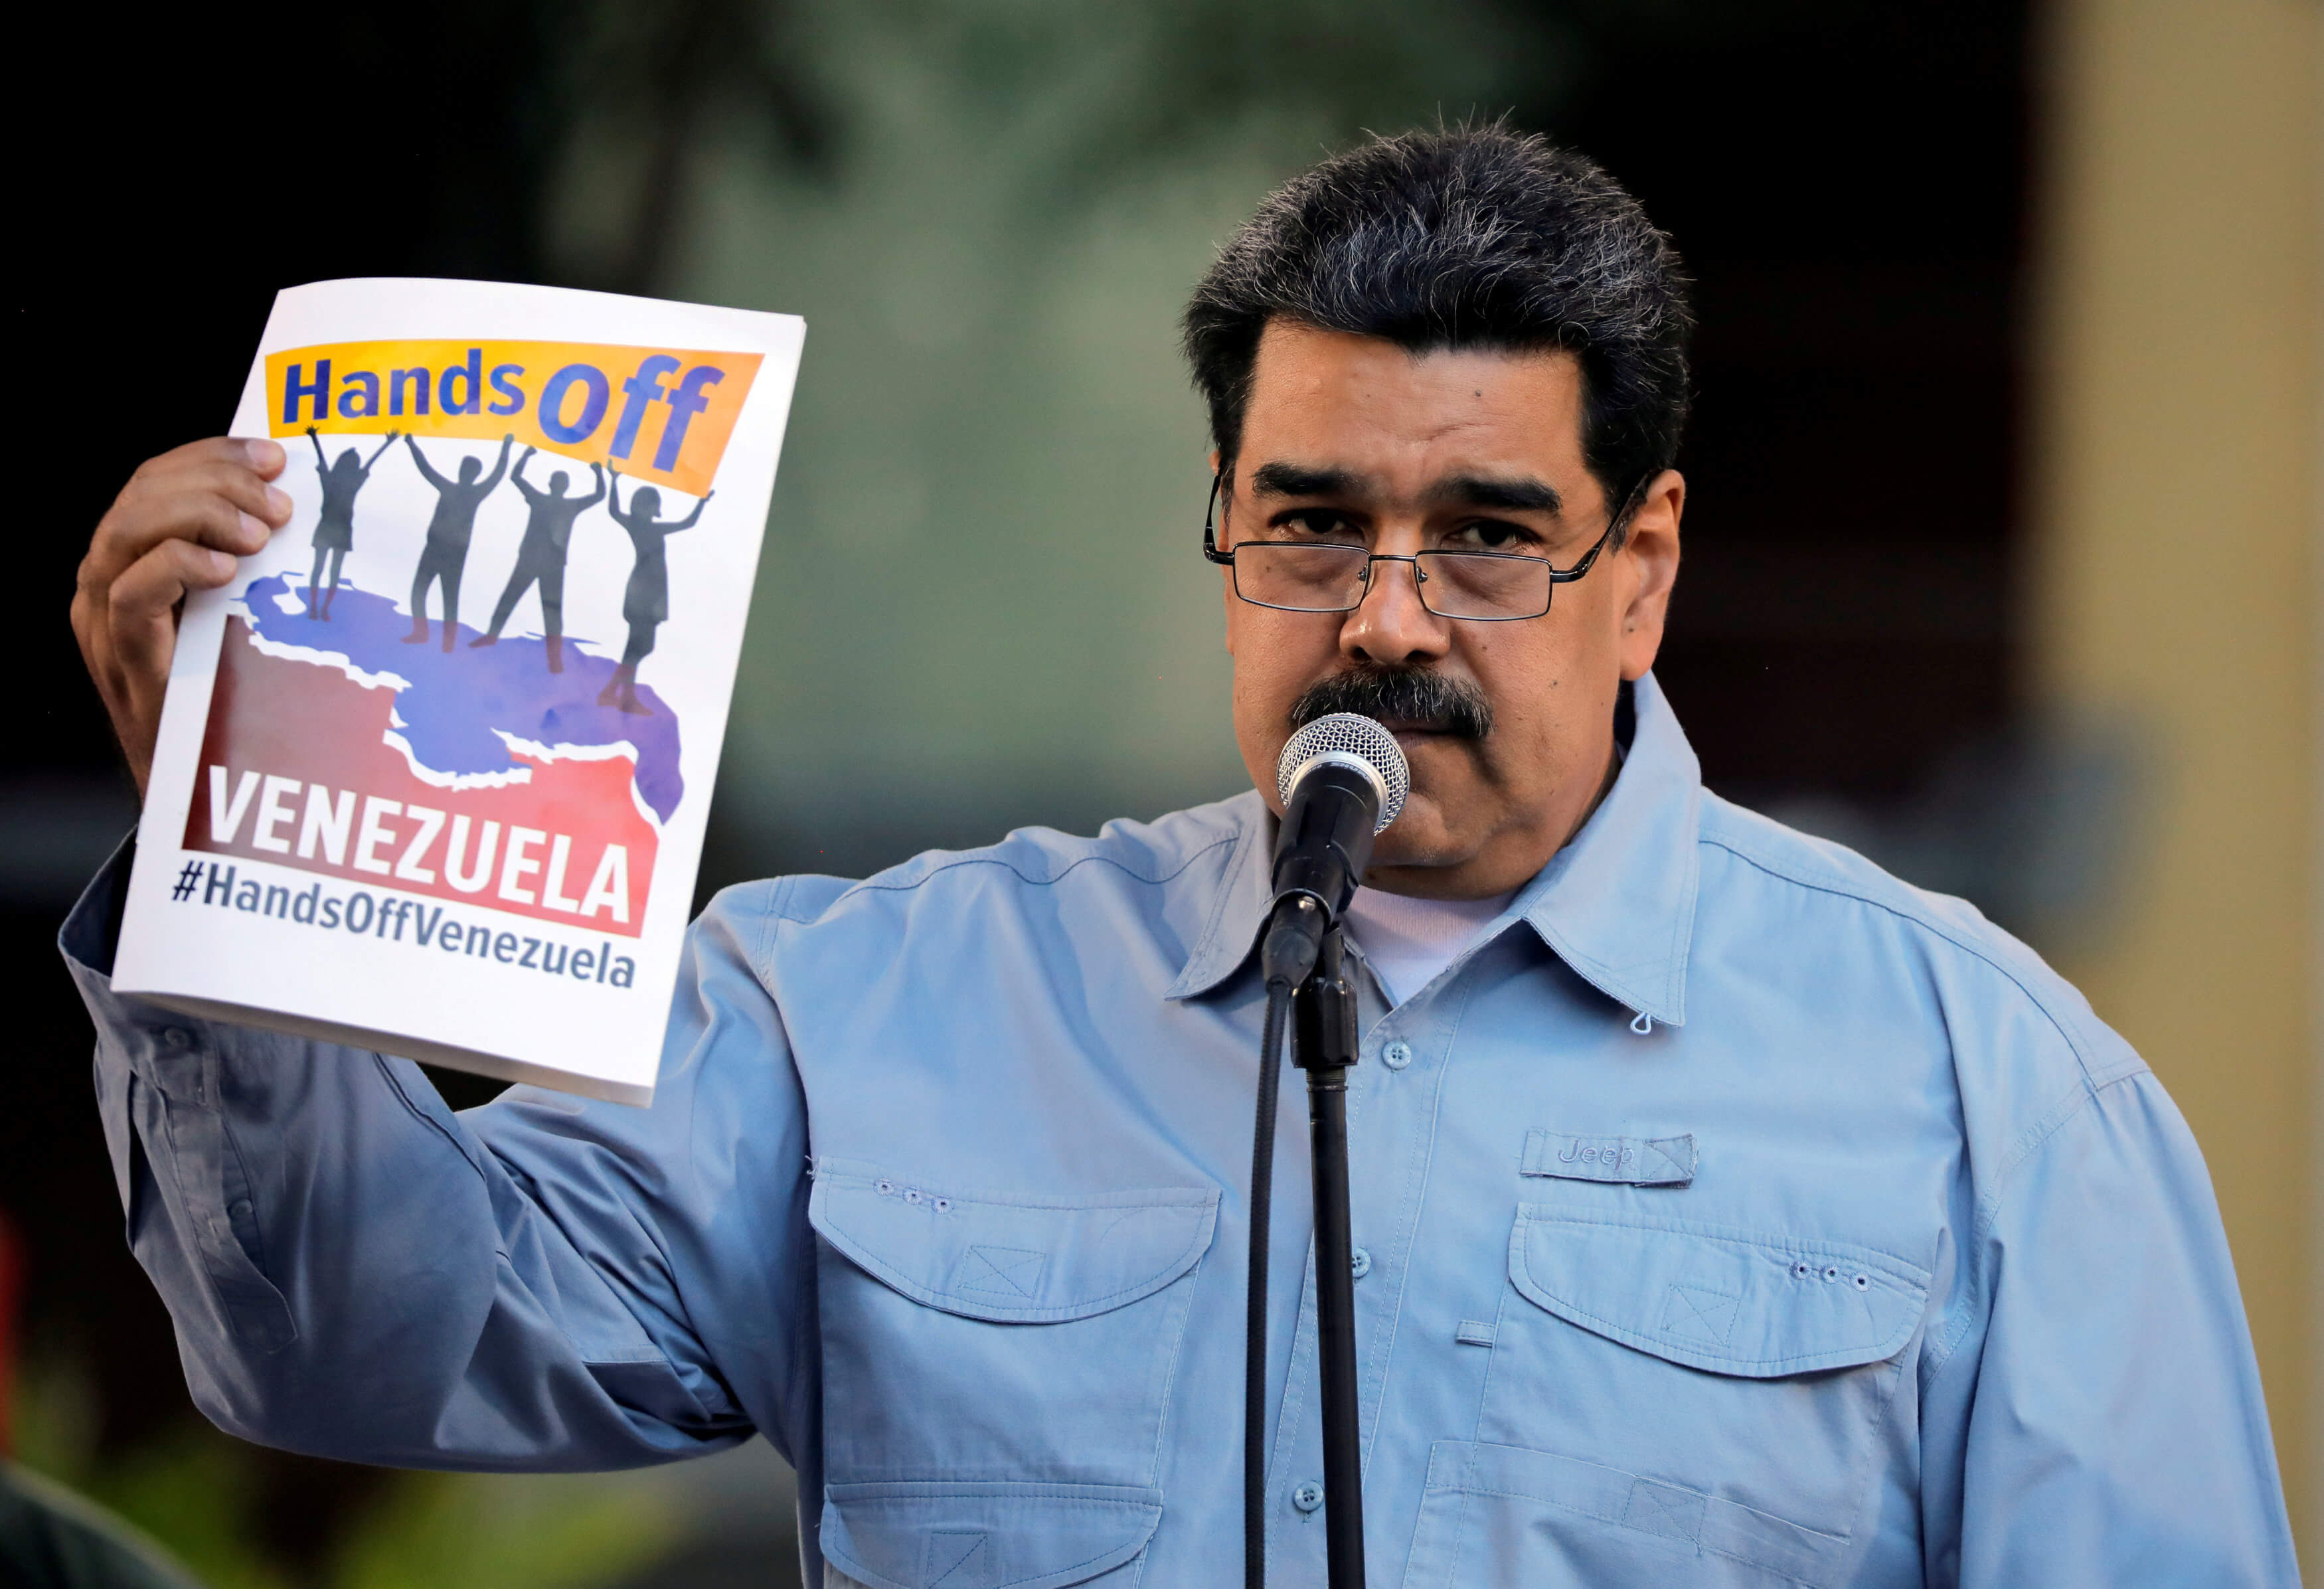 Foto: Nicolás Maduro, presidente de Venezuela, sostiene un cartel del concierto “Hands Off Venezuela” el 7 de febrero del 2019